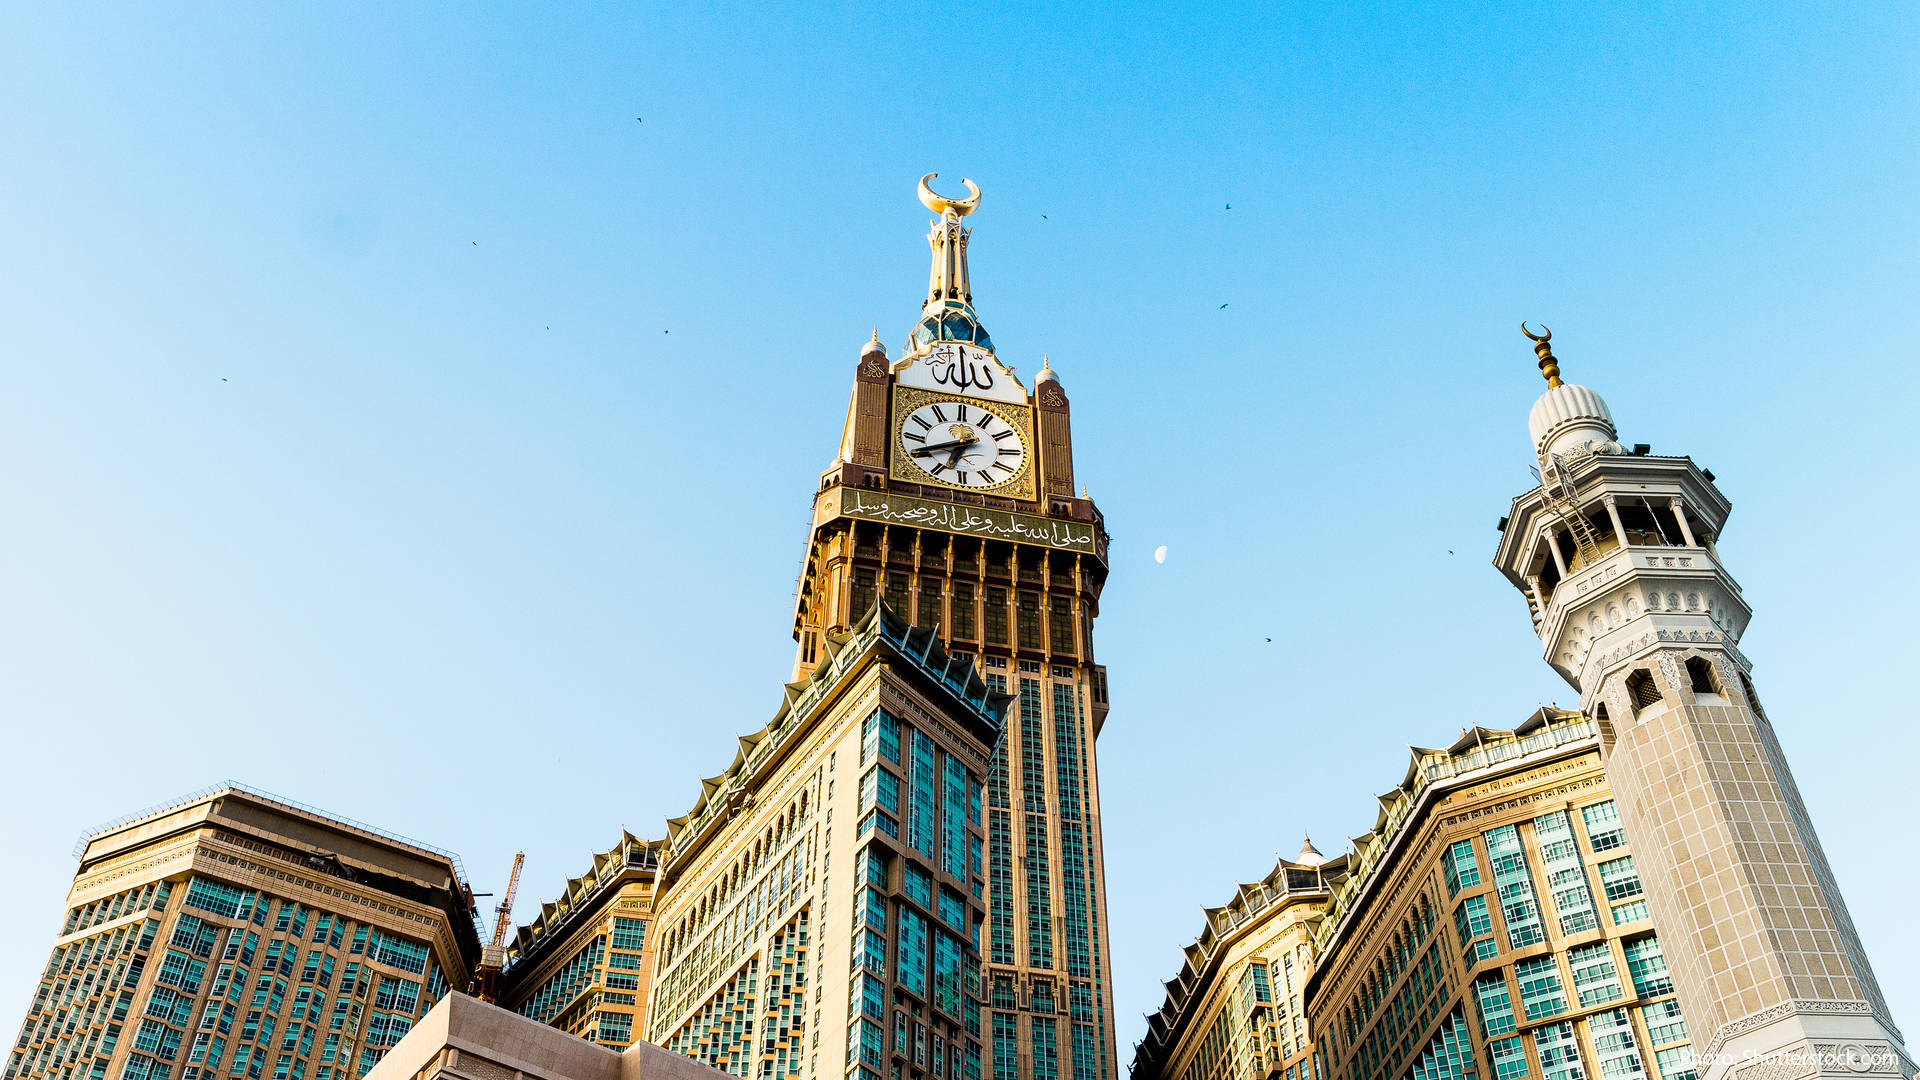 3 мекка. Часовая башня Абрадж Аль-Бейт. Королевская часовая башня Абрадж Аль-Баит-Мекка. Часовой башне Абрадж Аль-Бейт в Мекке. The Abraj al-Bait, Мекка, Саудовская Аравия.